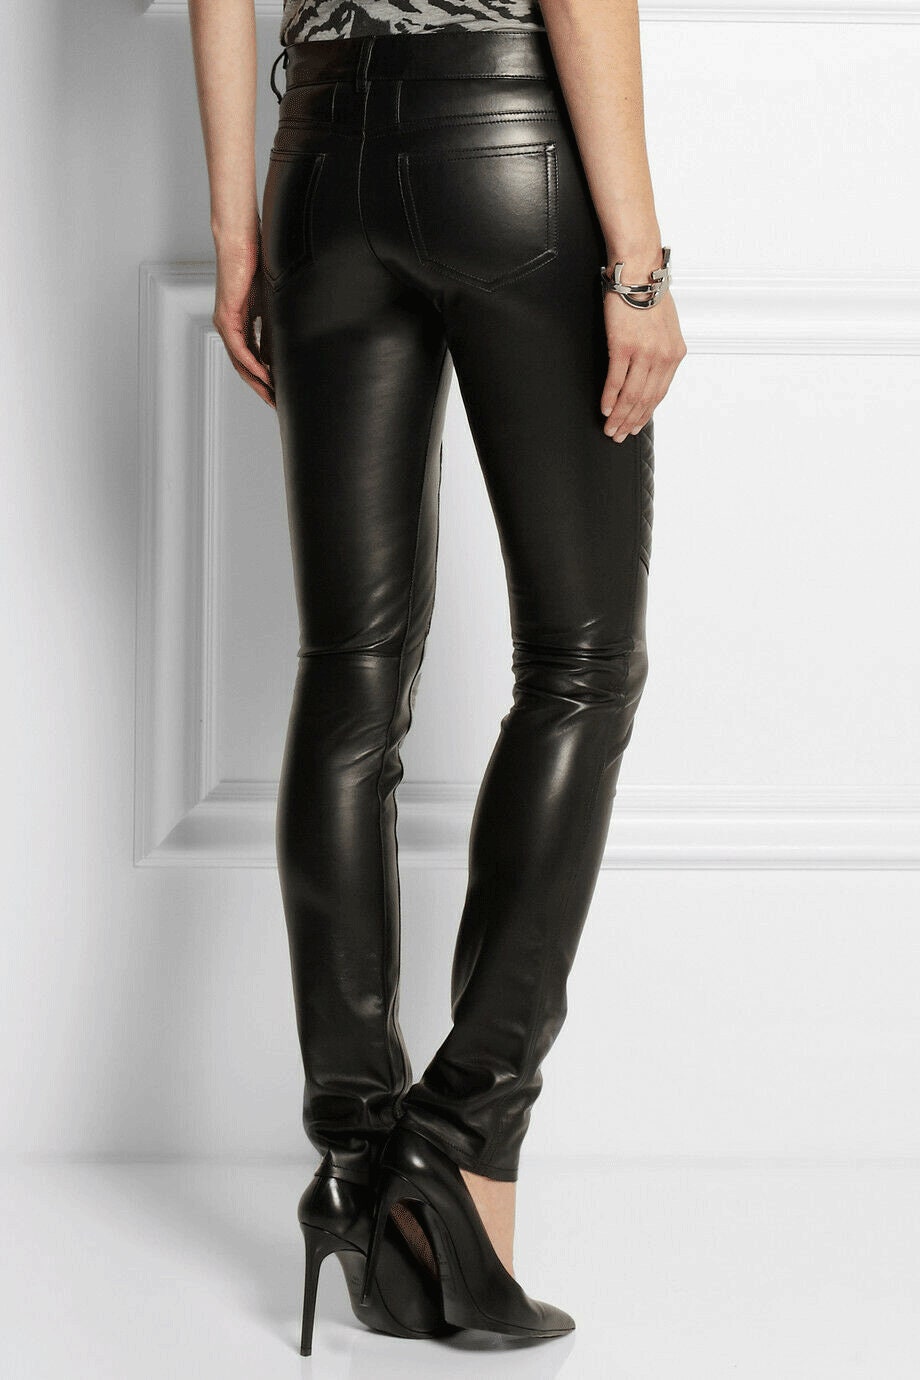 Women Biker Style Leather Pants Jeans Black Genuine Jeans - Etsy UK